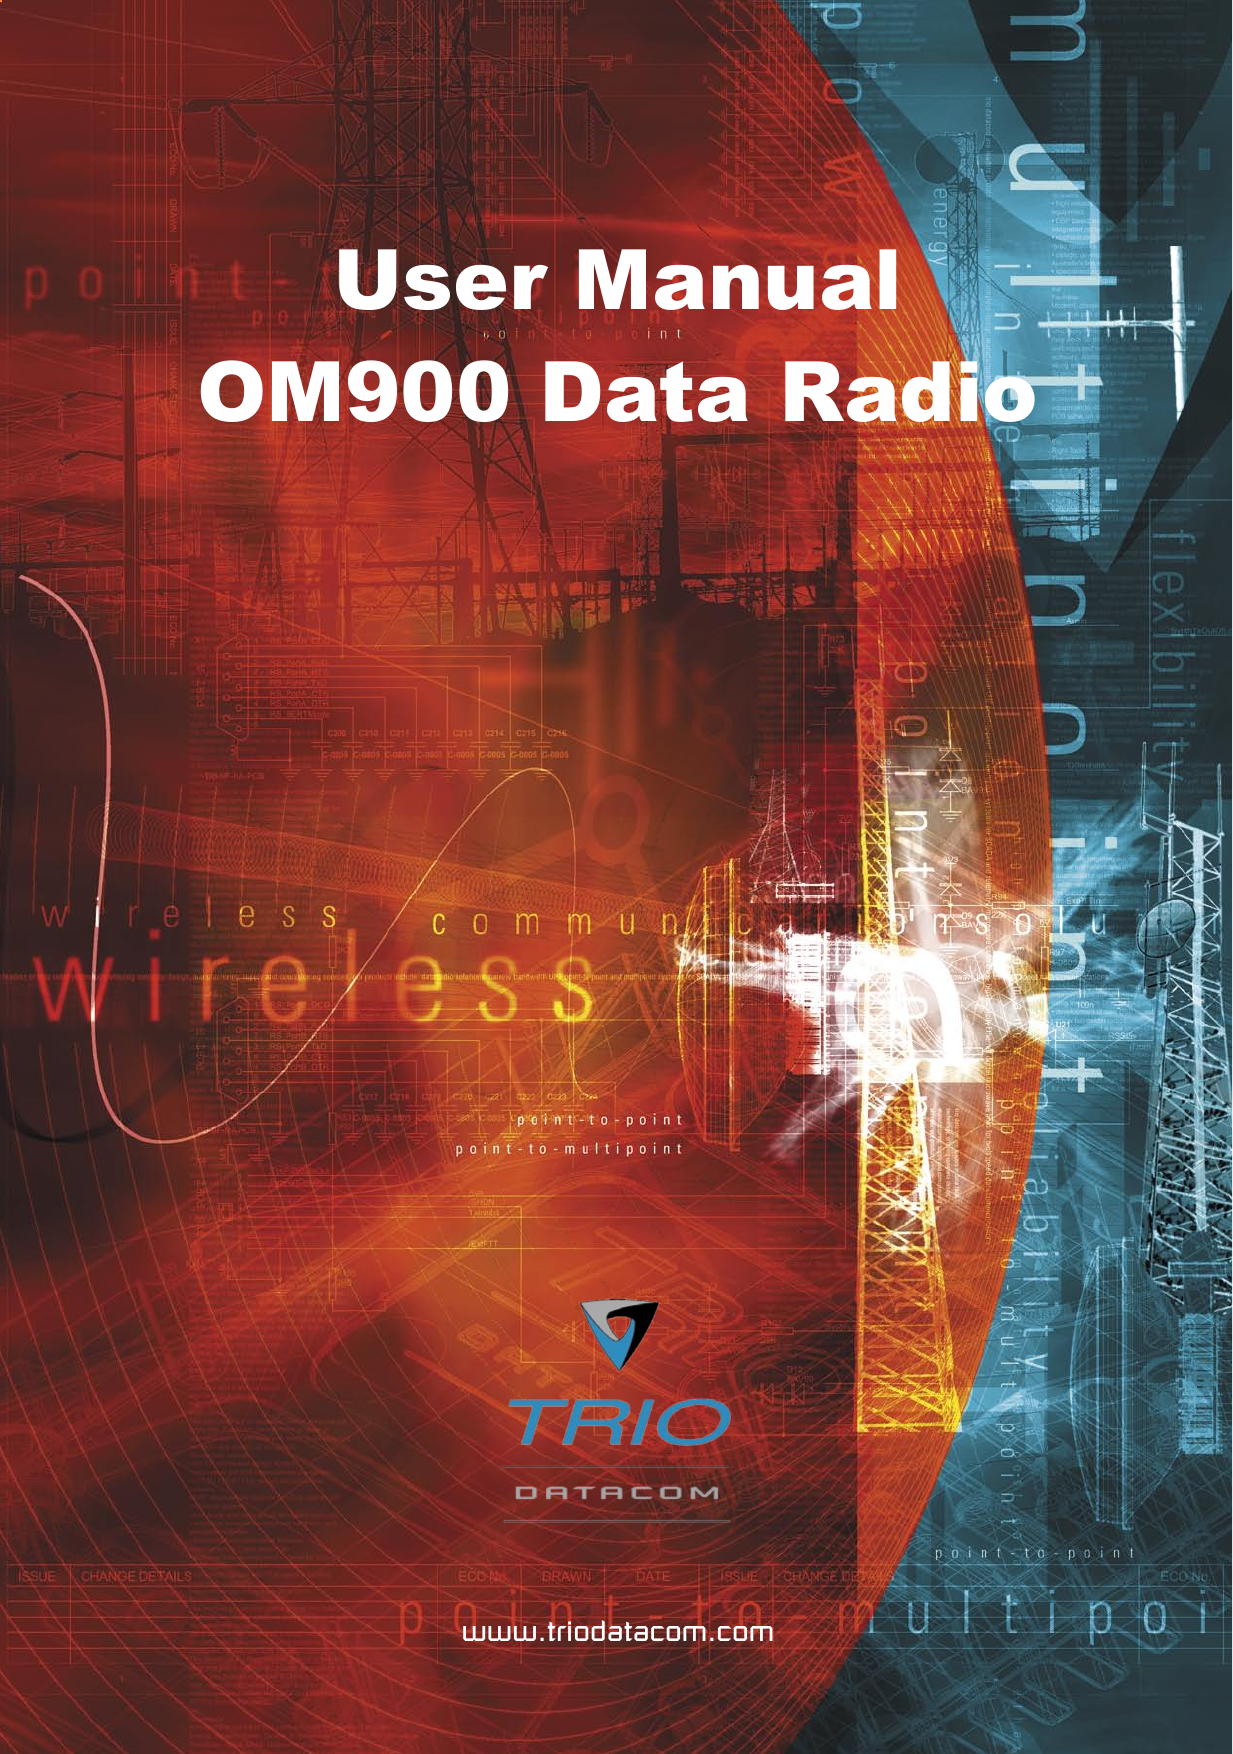   Page 1 © Copyright 2007 Trio DataCom Pty. Ltd. O Series Data Radio – User ManualUser ManualOM900 Data Radio www.triodatacom.com